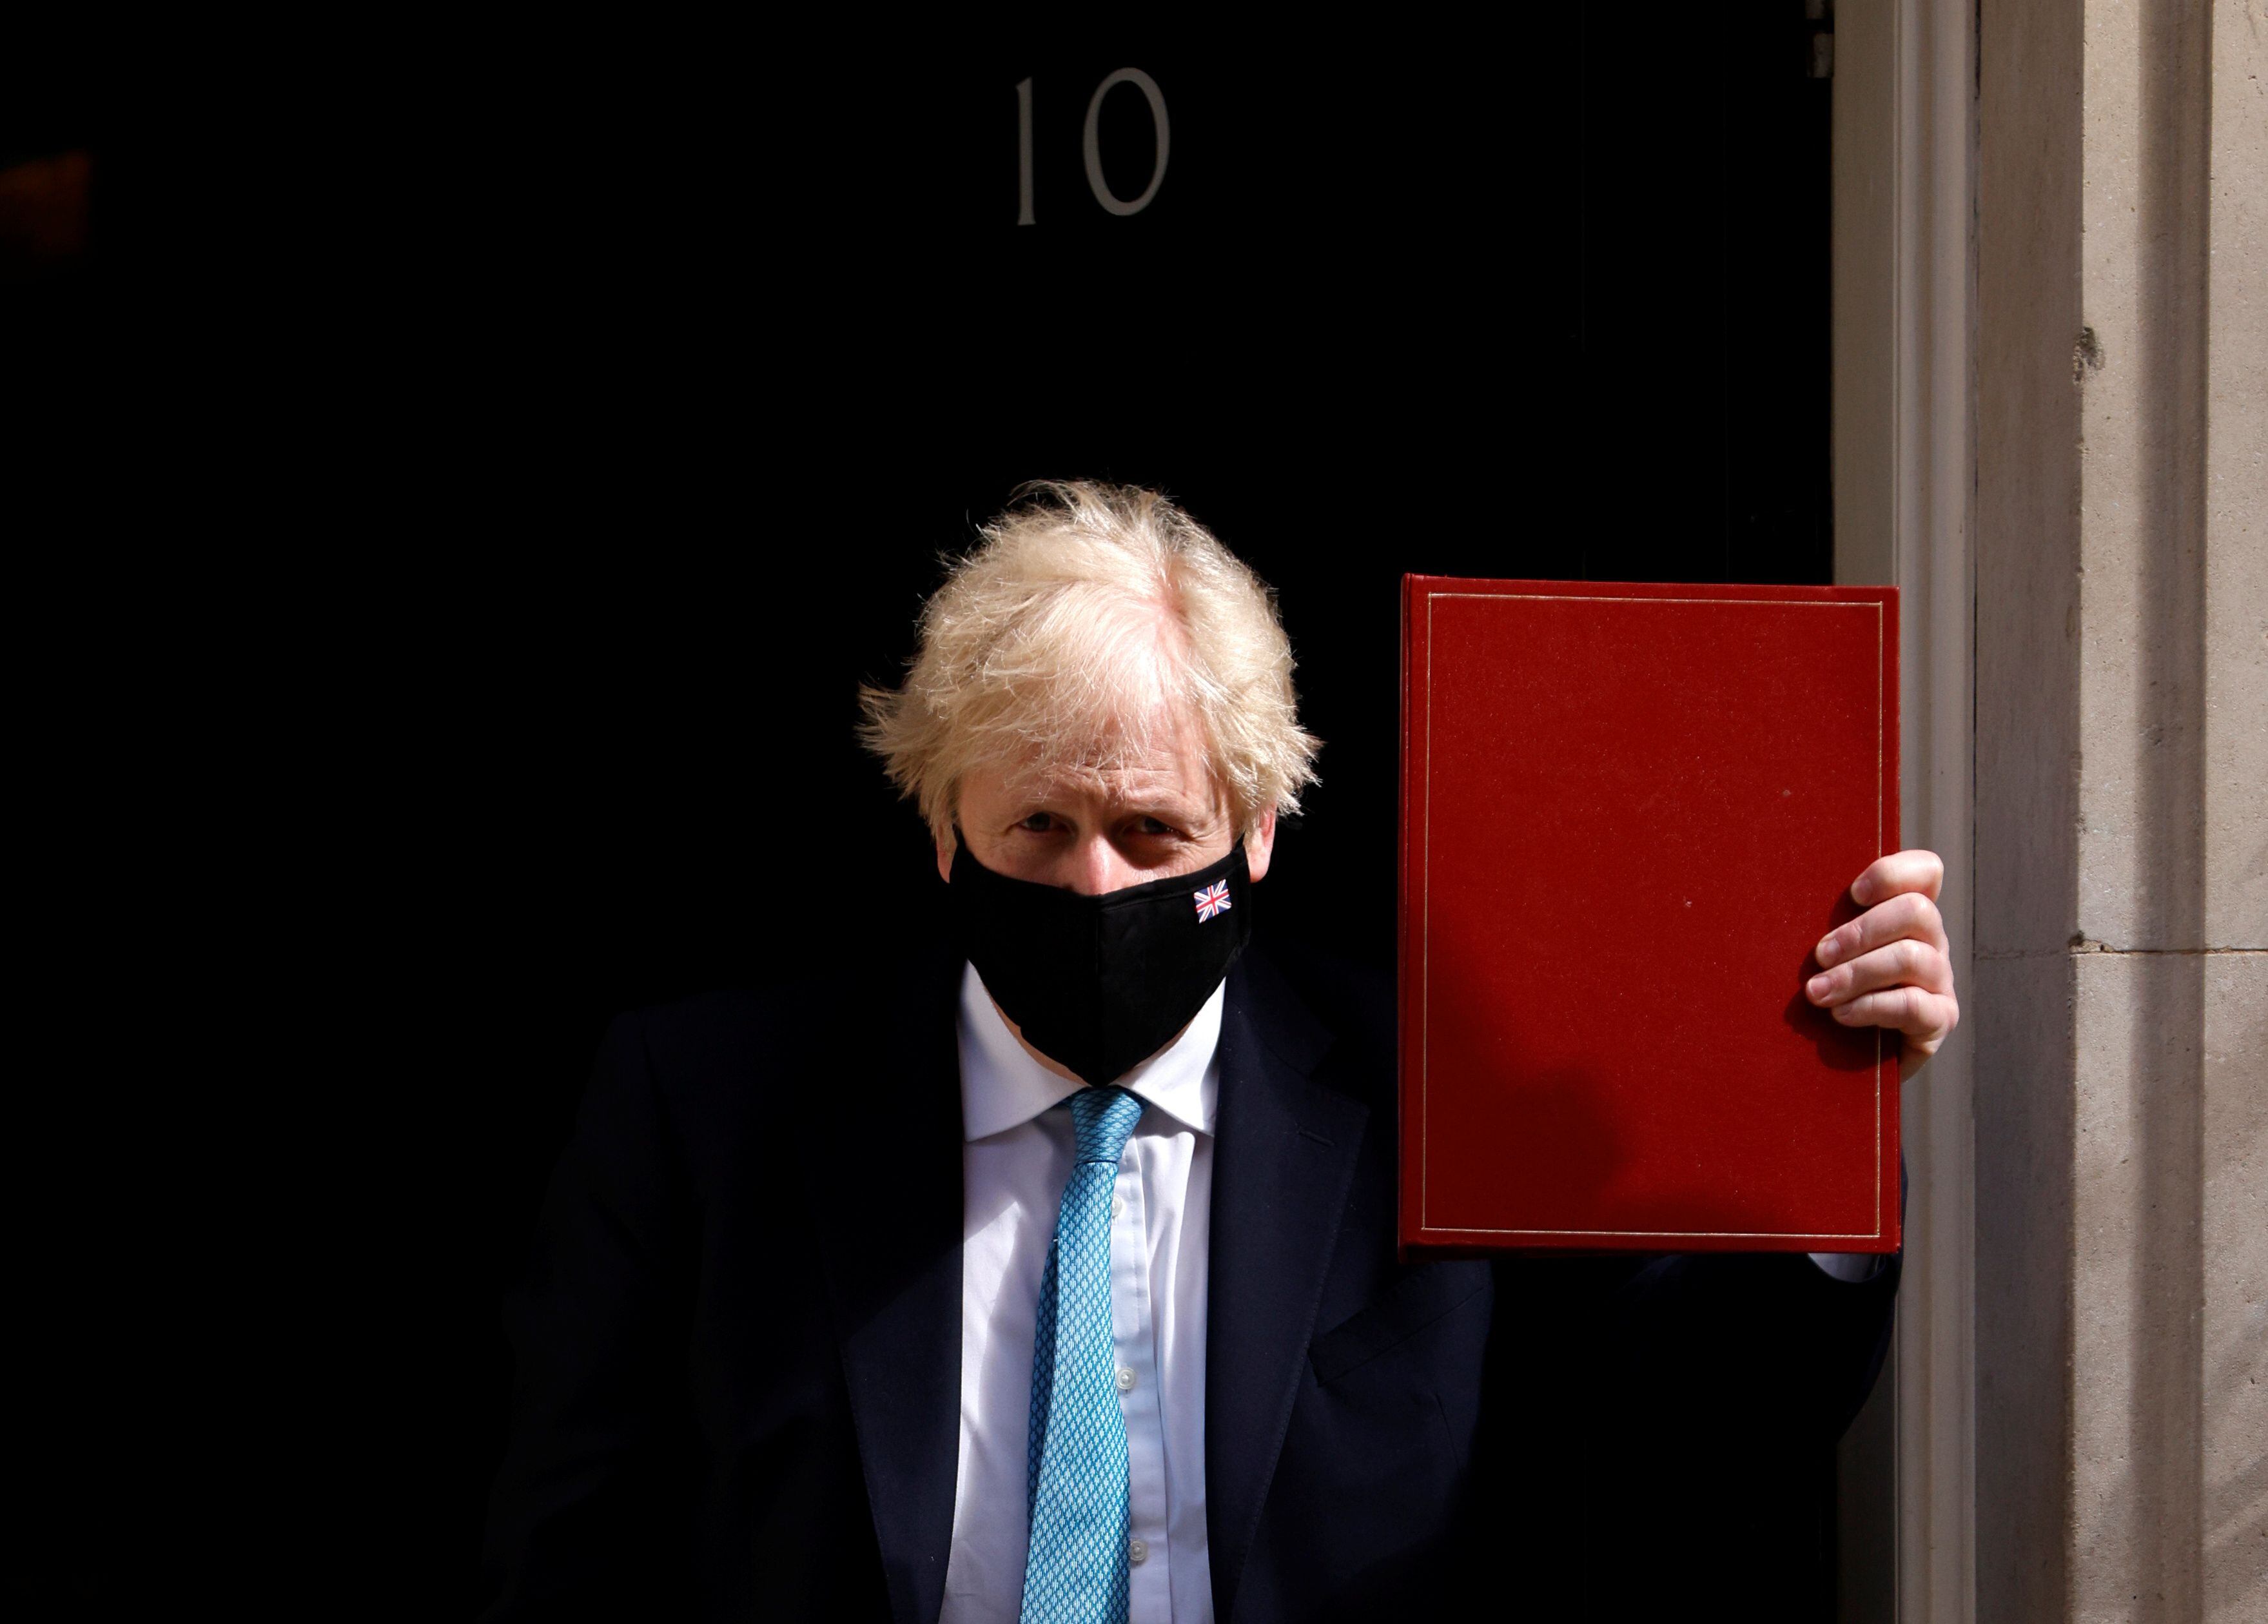 El primer ministro británico, Boris Johnson, sale de Downing Street para la apertura estatal del Parlamento en el Palacio de Westminster, donde se llevará a cabo una ceremonia reducida debido a las restricciones de la enfermedad del coronavirus (COVID-19), en Londres, Gran Bretaña, el 11 de mayo de 2021 .
REUTERS/John Sibley